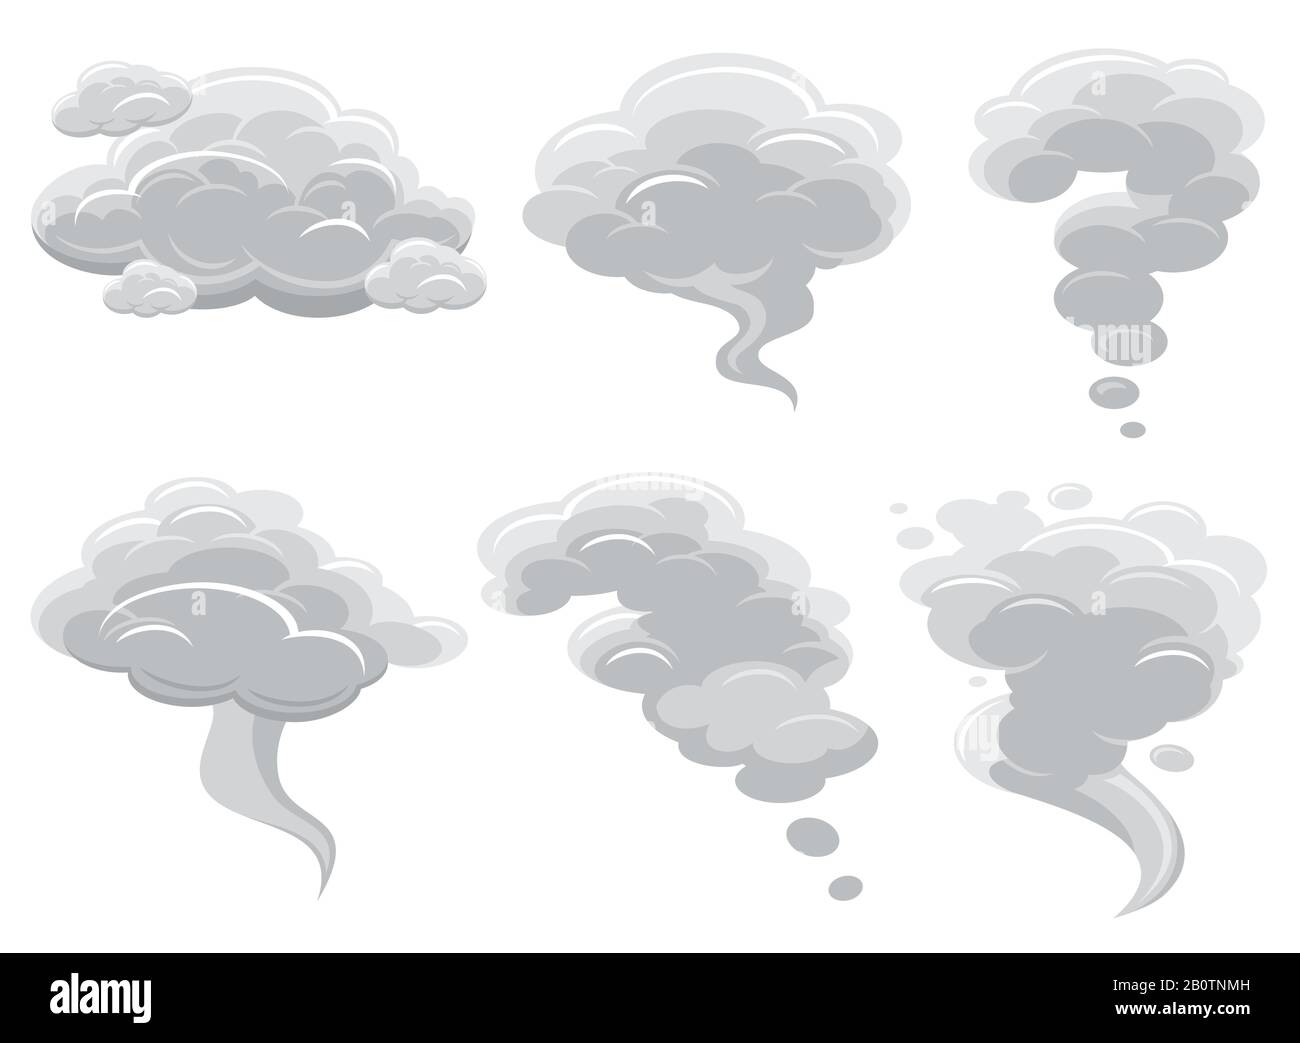 Cartoon smoking clouds and comic cumulus cloud vector collection. Air cloud cartoon cumulonimbus illustration Stock Vector